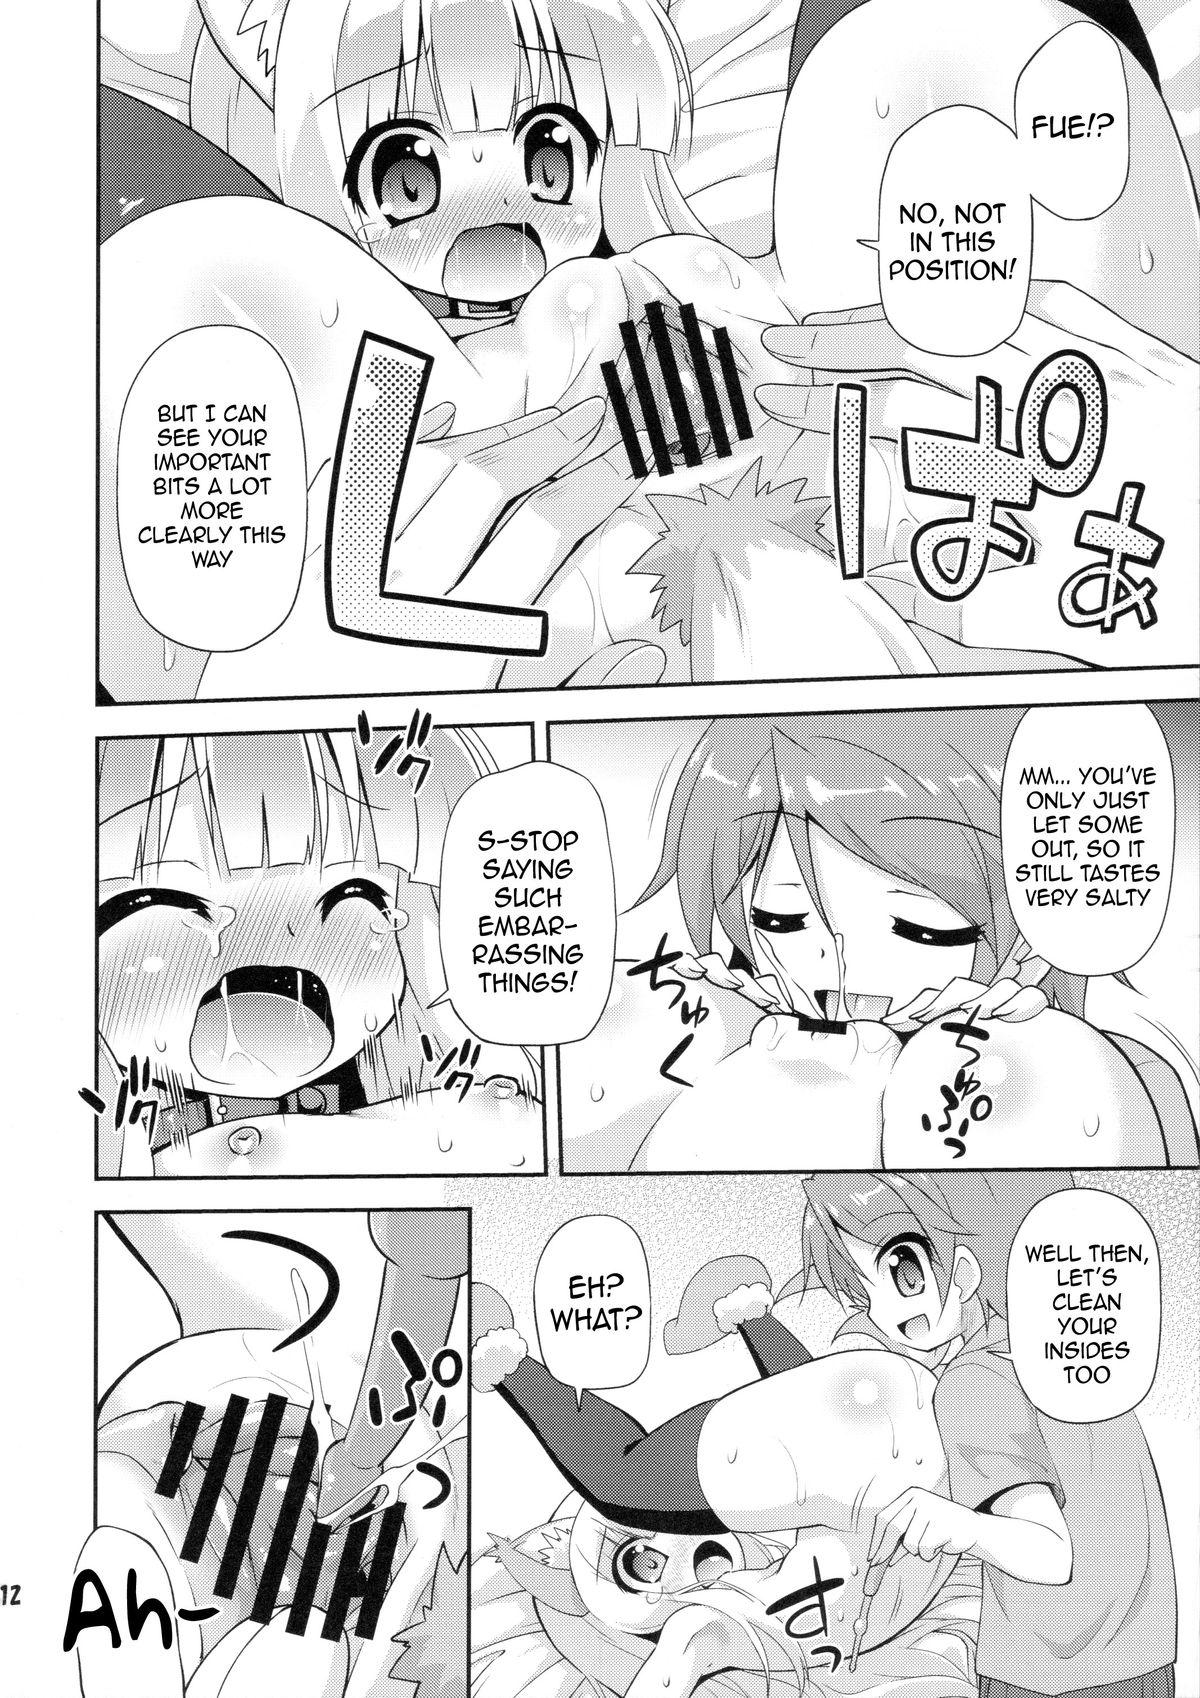 Bdsm HENTAI wa Home Kotoba da! - "HENTAI" is a eulogy! - Hentai ouji to warawanai neko Boots - Page 11